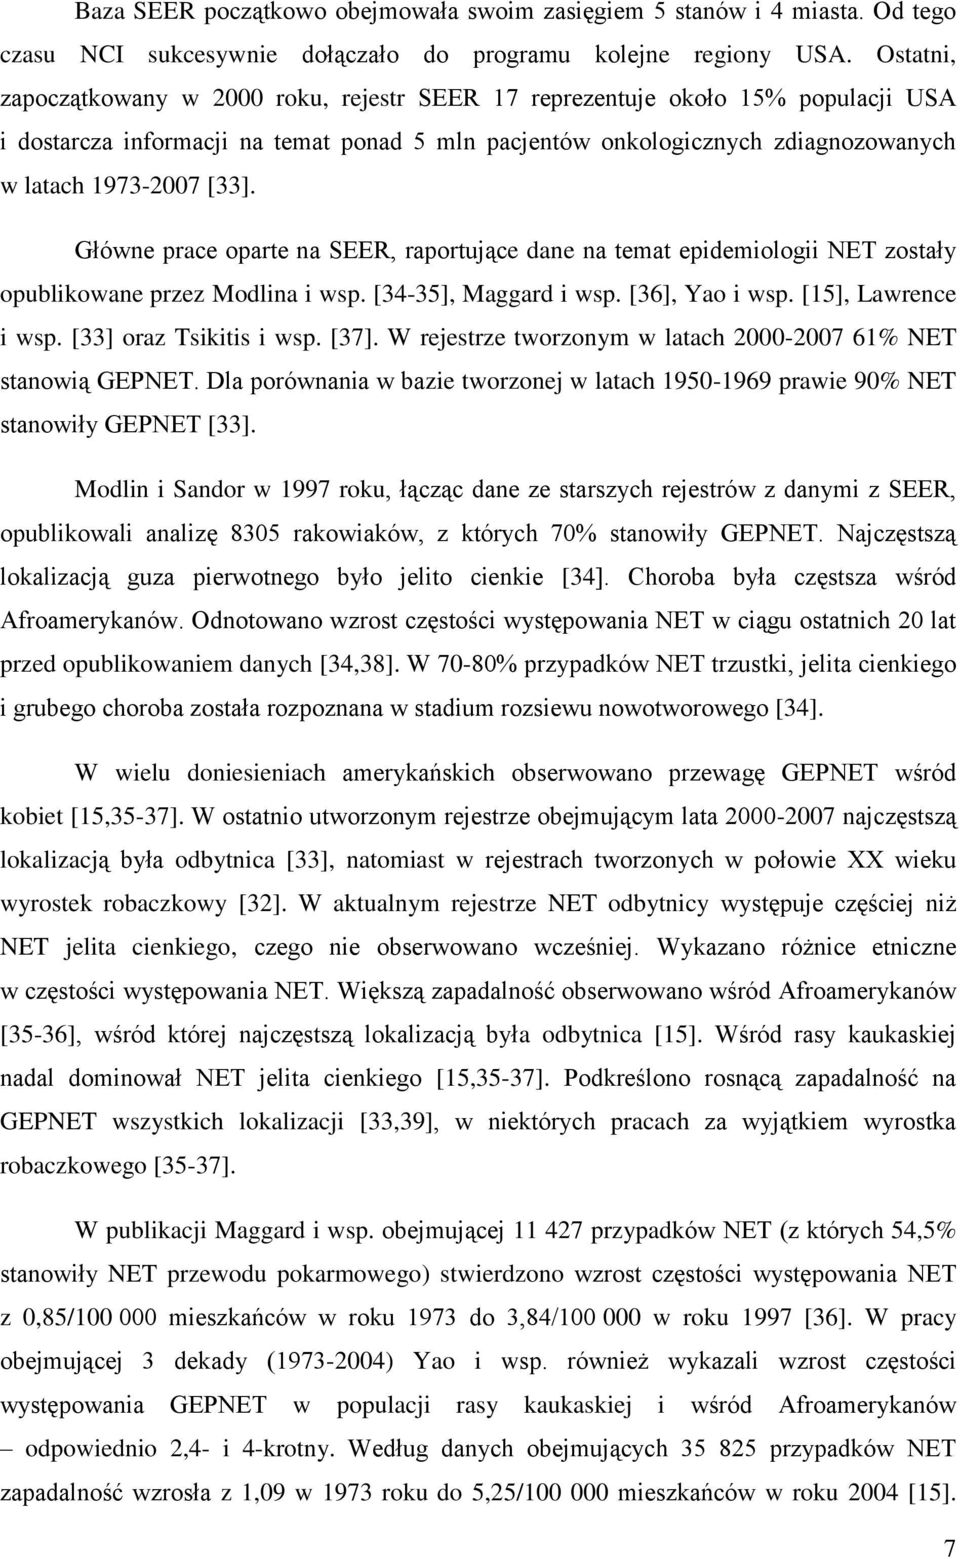 Główne prace oparte na SEER, raportujące dane na temat epidemiologii NET zostały opublikowane przez Modlina i wsp. [34-35], Maggard i wsp. [36], Yao i wsp. [15], Lawrence i wsp.